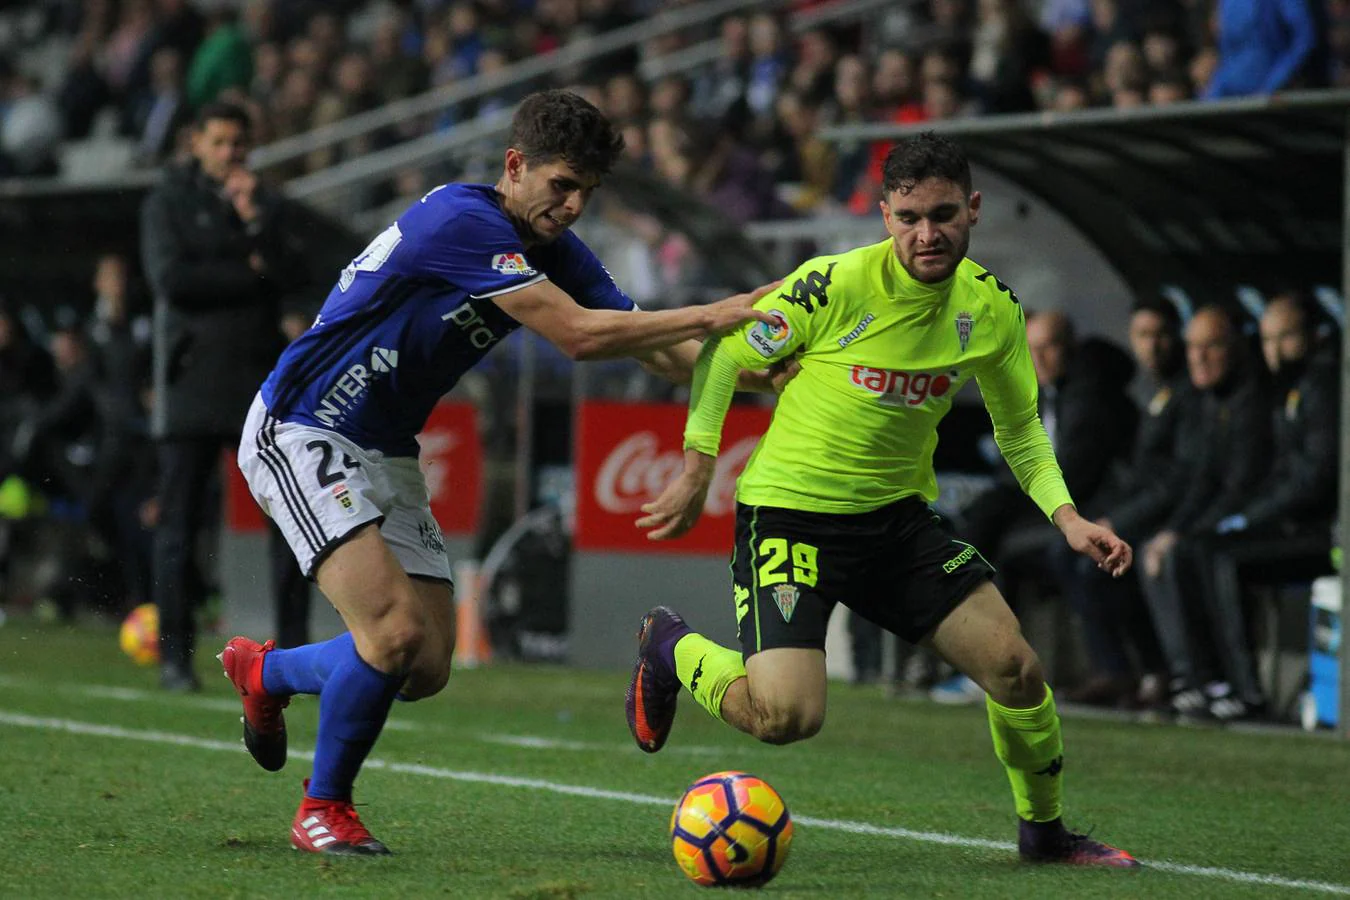 Seis meses sin ganar fuera. La última victoria del Córdoba en la Liga a domicilio fue el 17 de diciembre de 2016 ante el Real Oviedo por 1-2 y ya no logró vencer fuera hasta seis meses después en junio ante al Rayo Vallecano